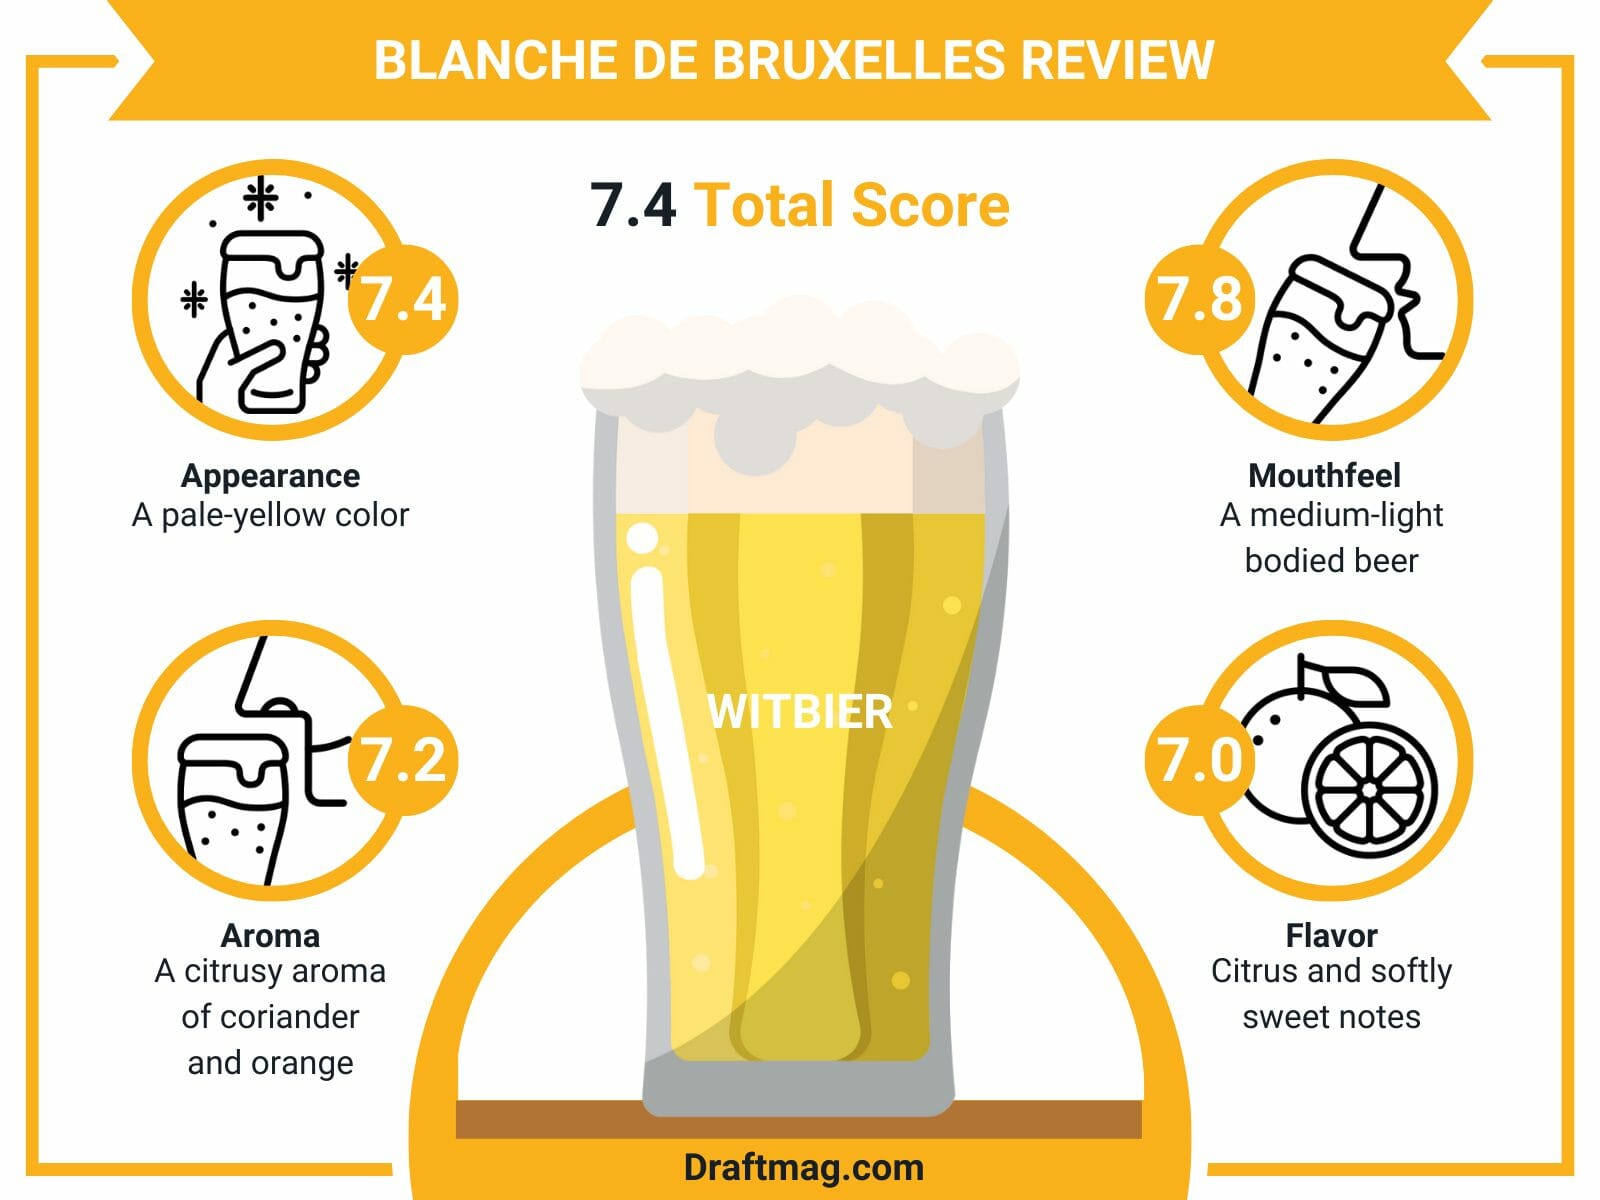 Blanche de Bruxelles Review Infographic